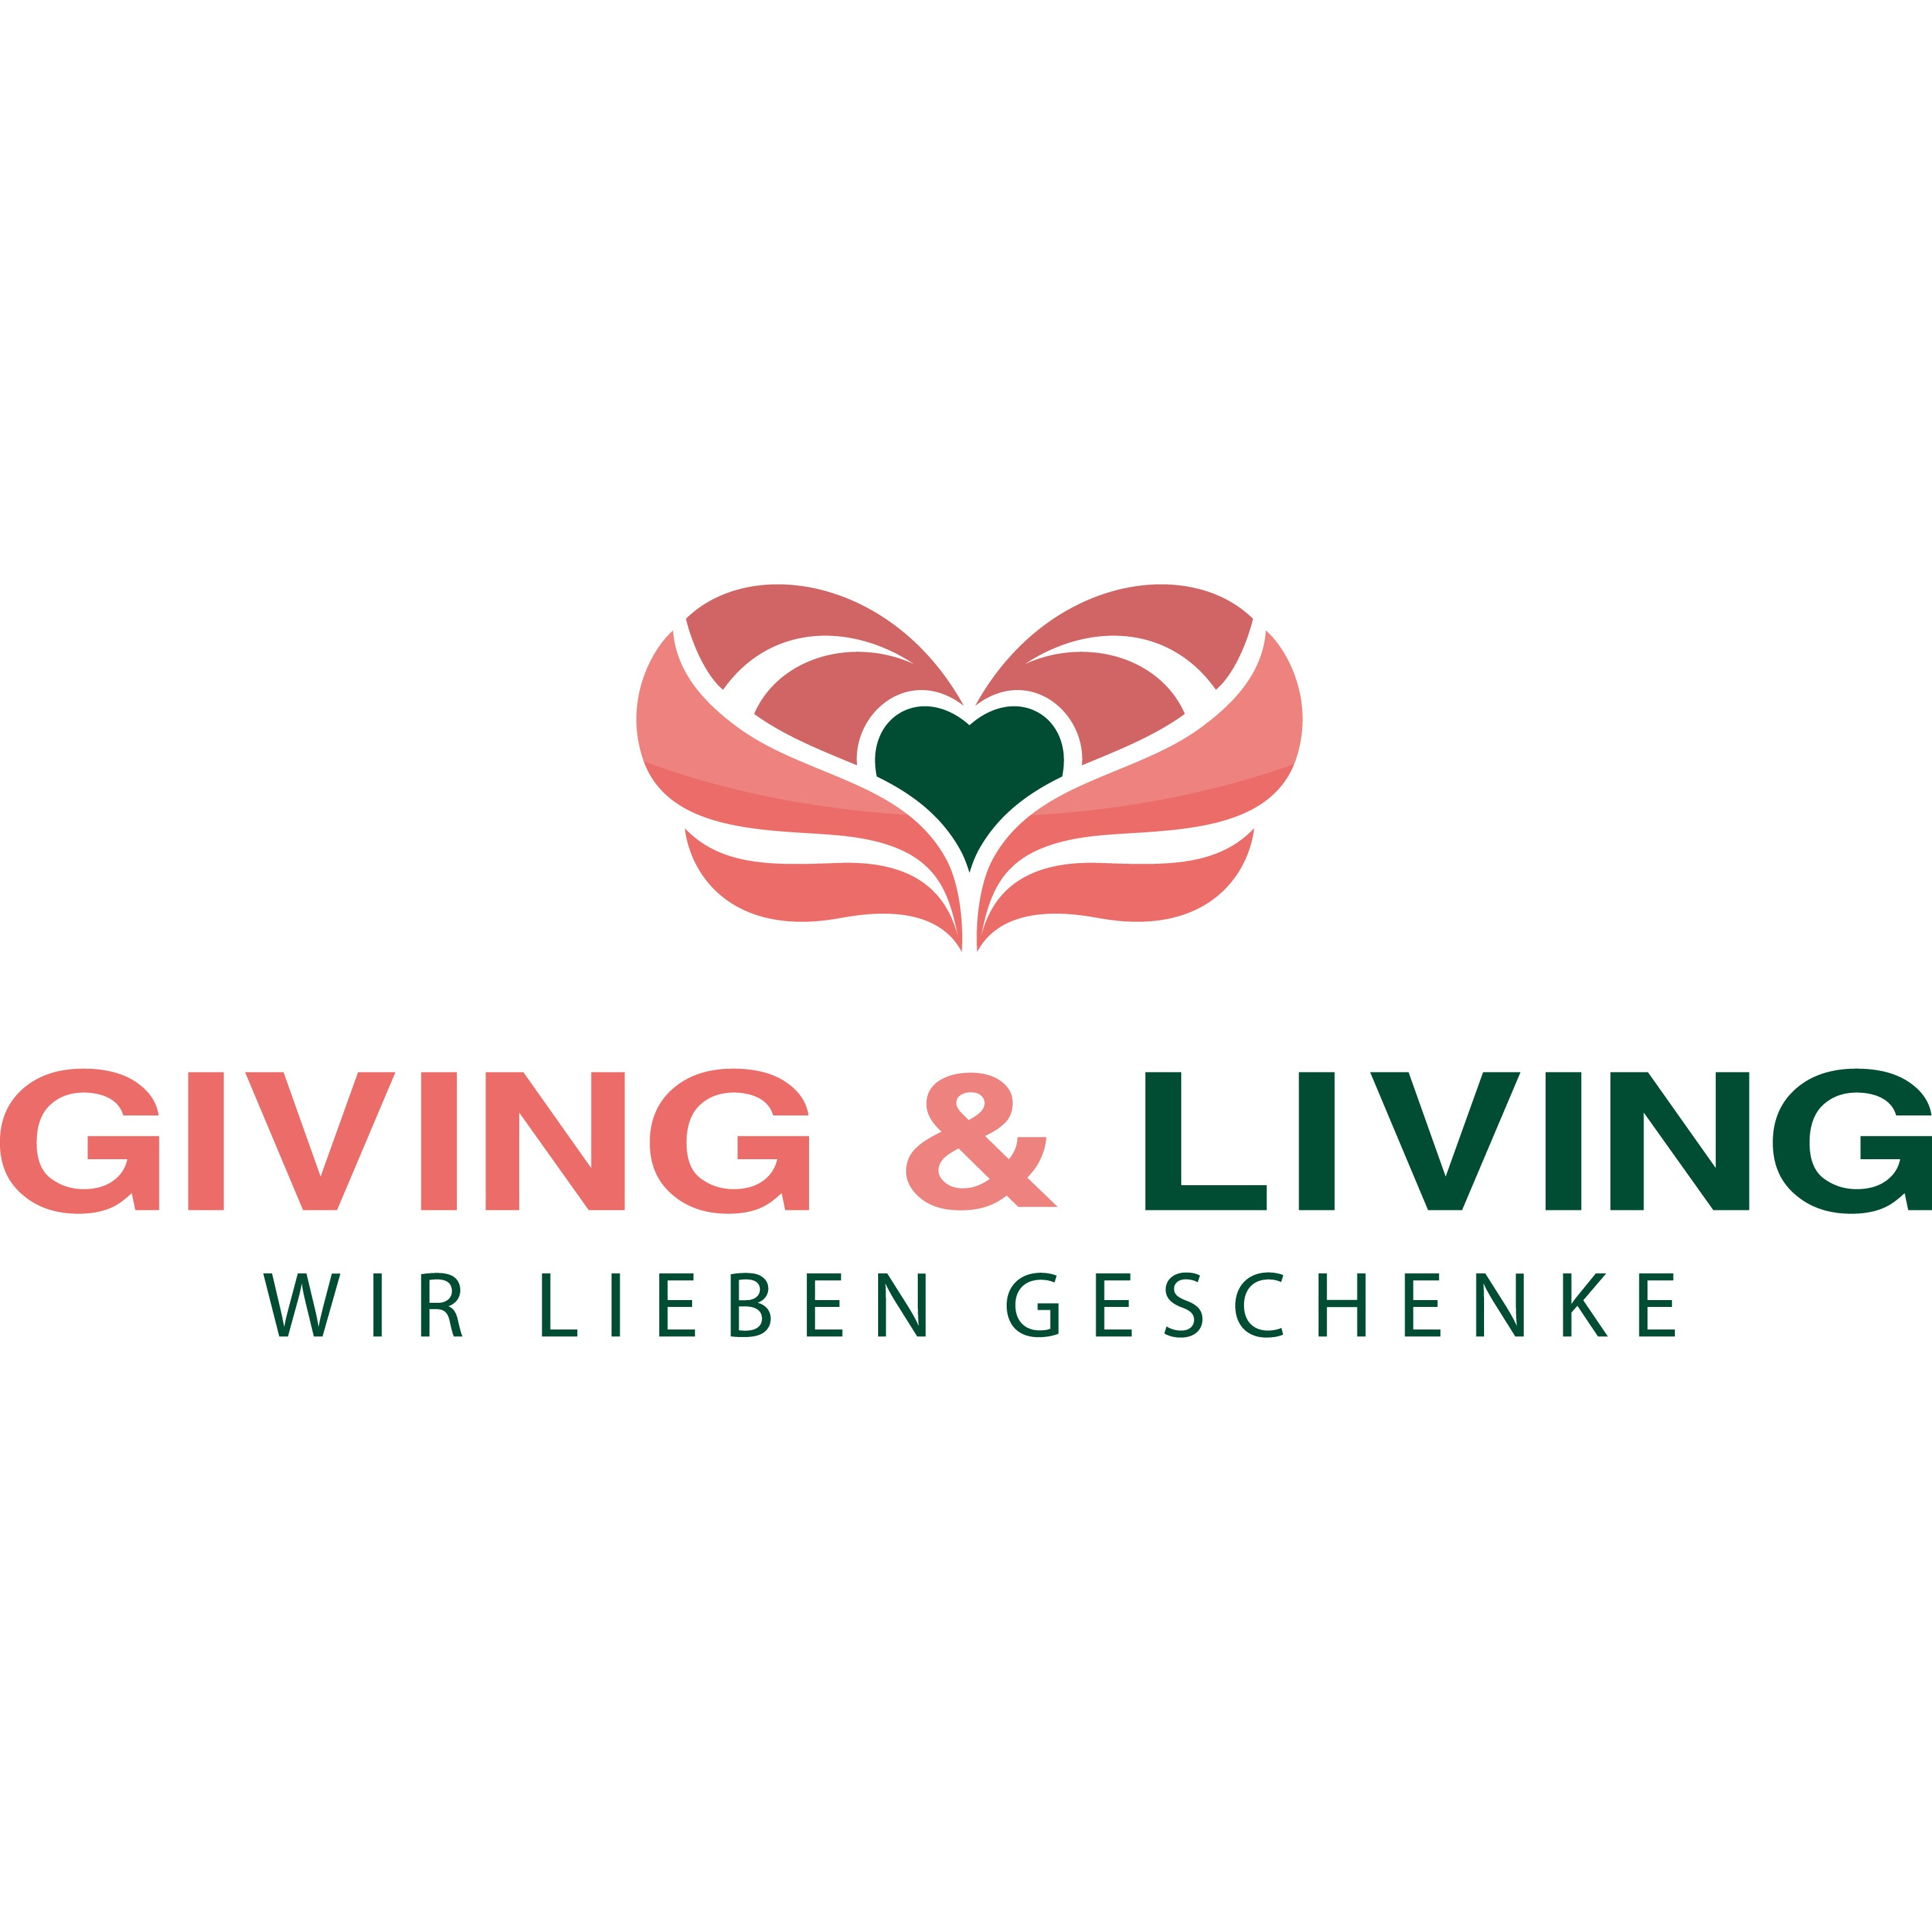 GIVING & LIVING - Geschenkboutique Logo